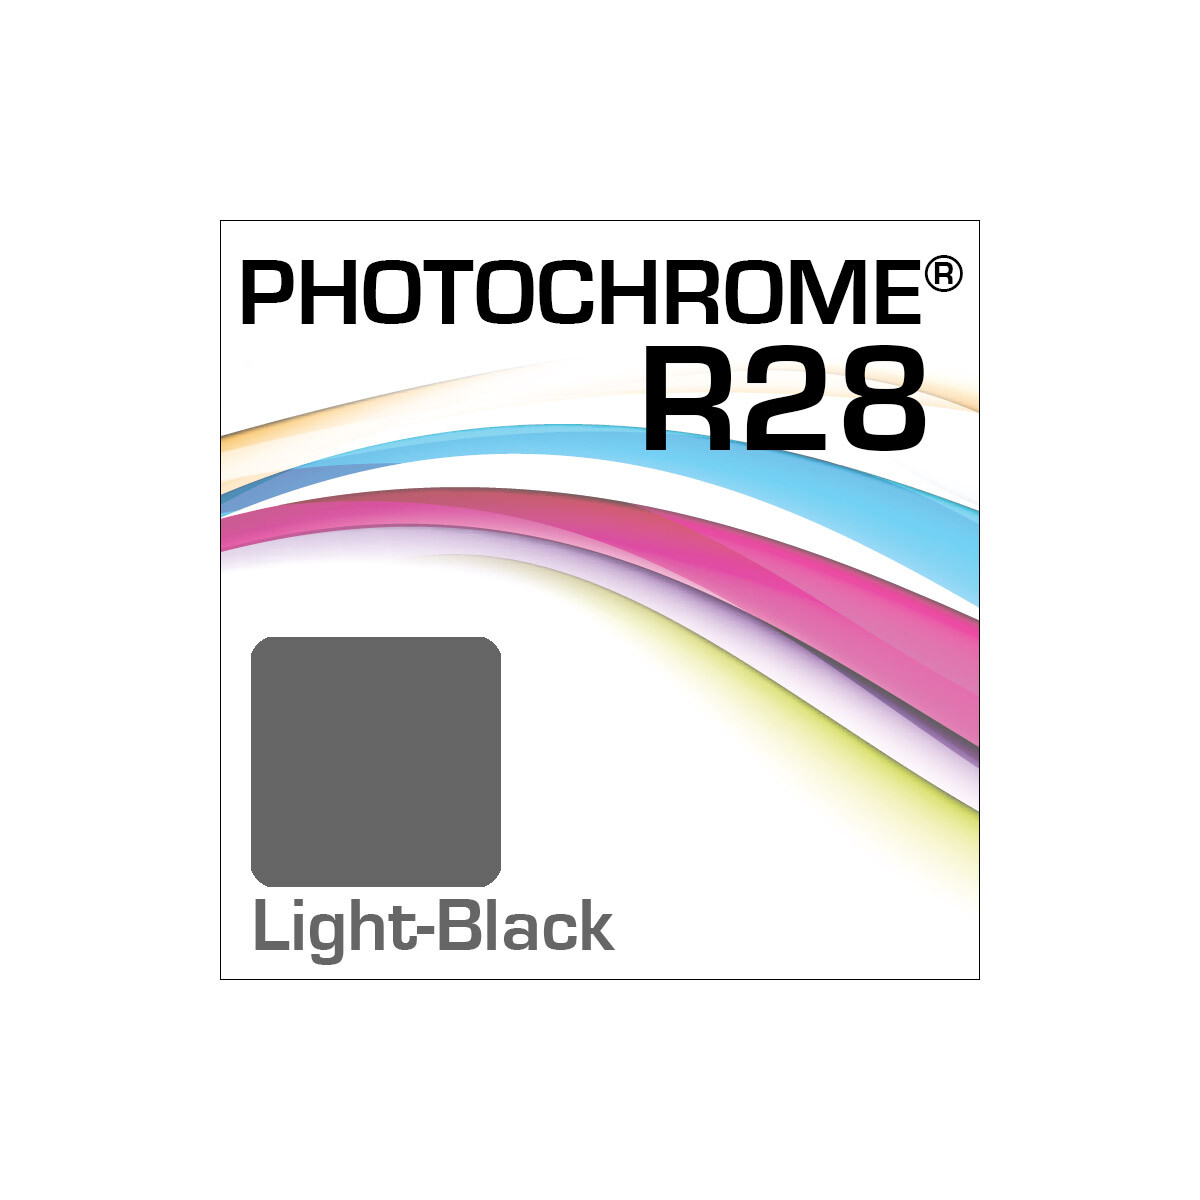 Lyson Photochrome R28 Bottle Light-Black